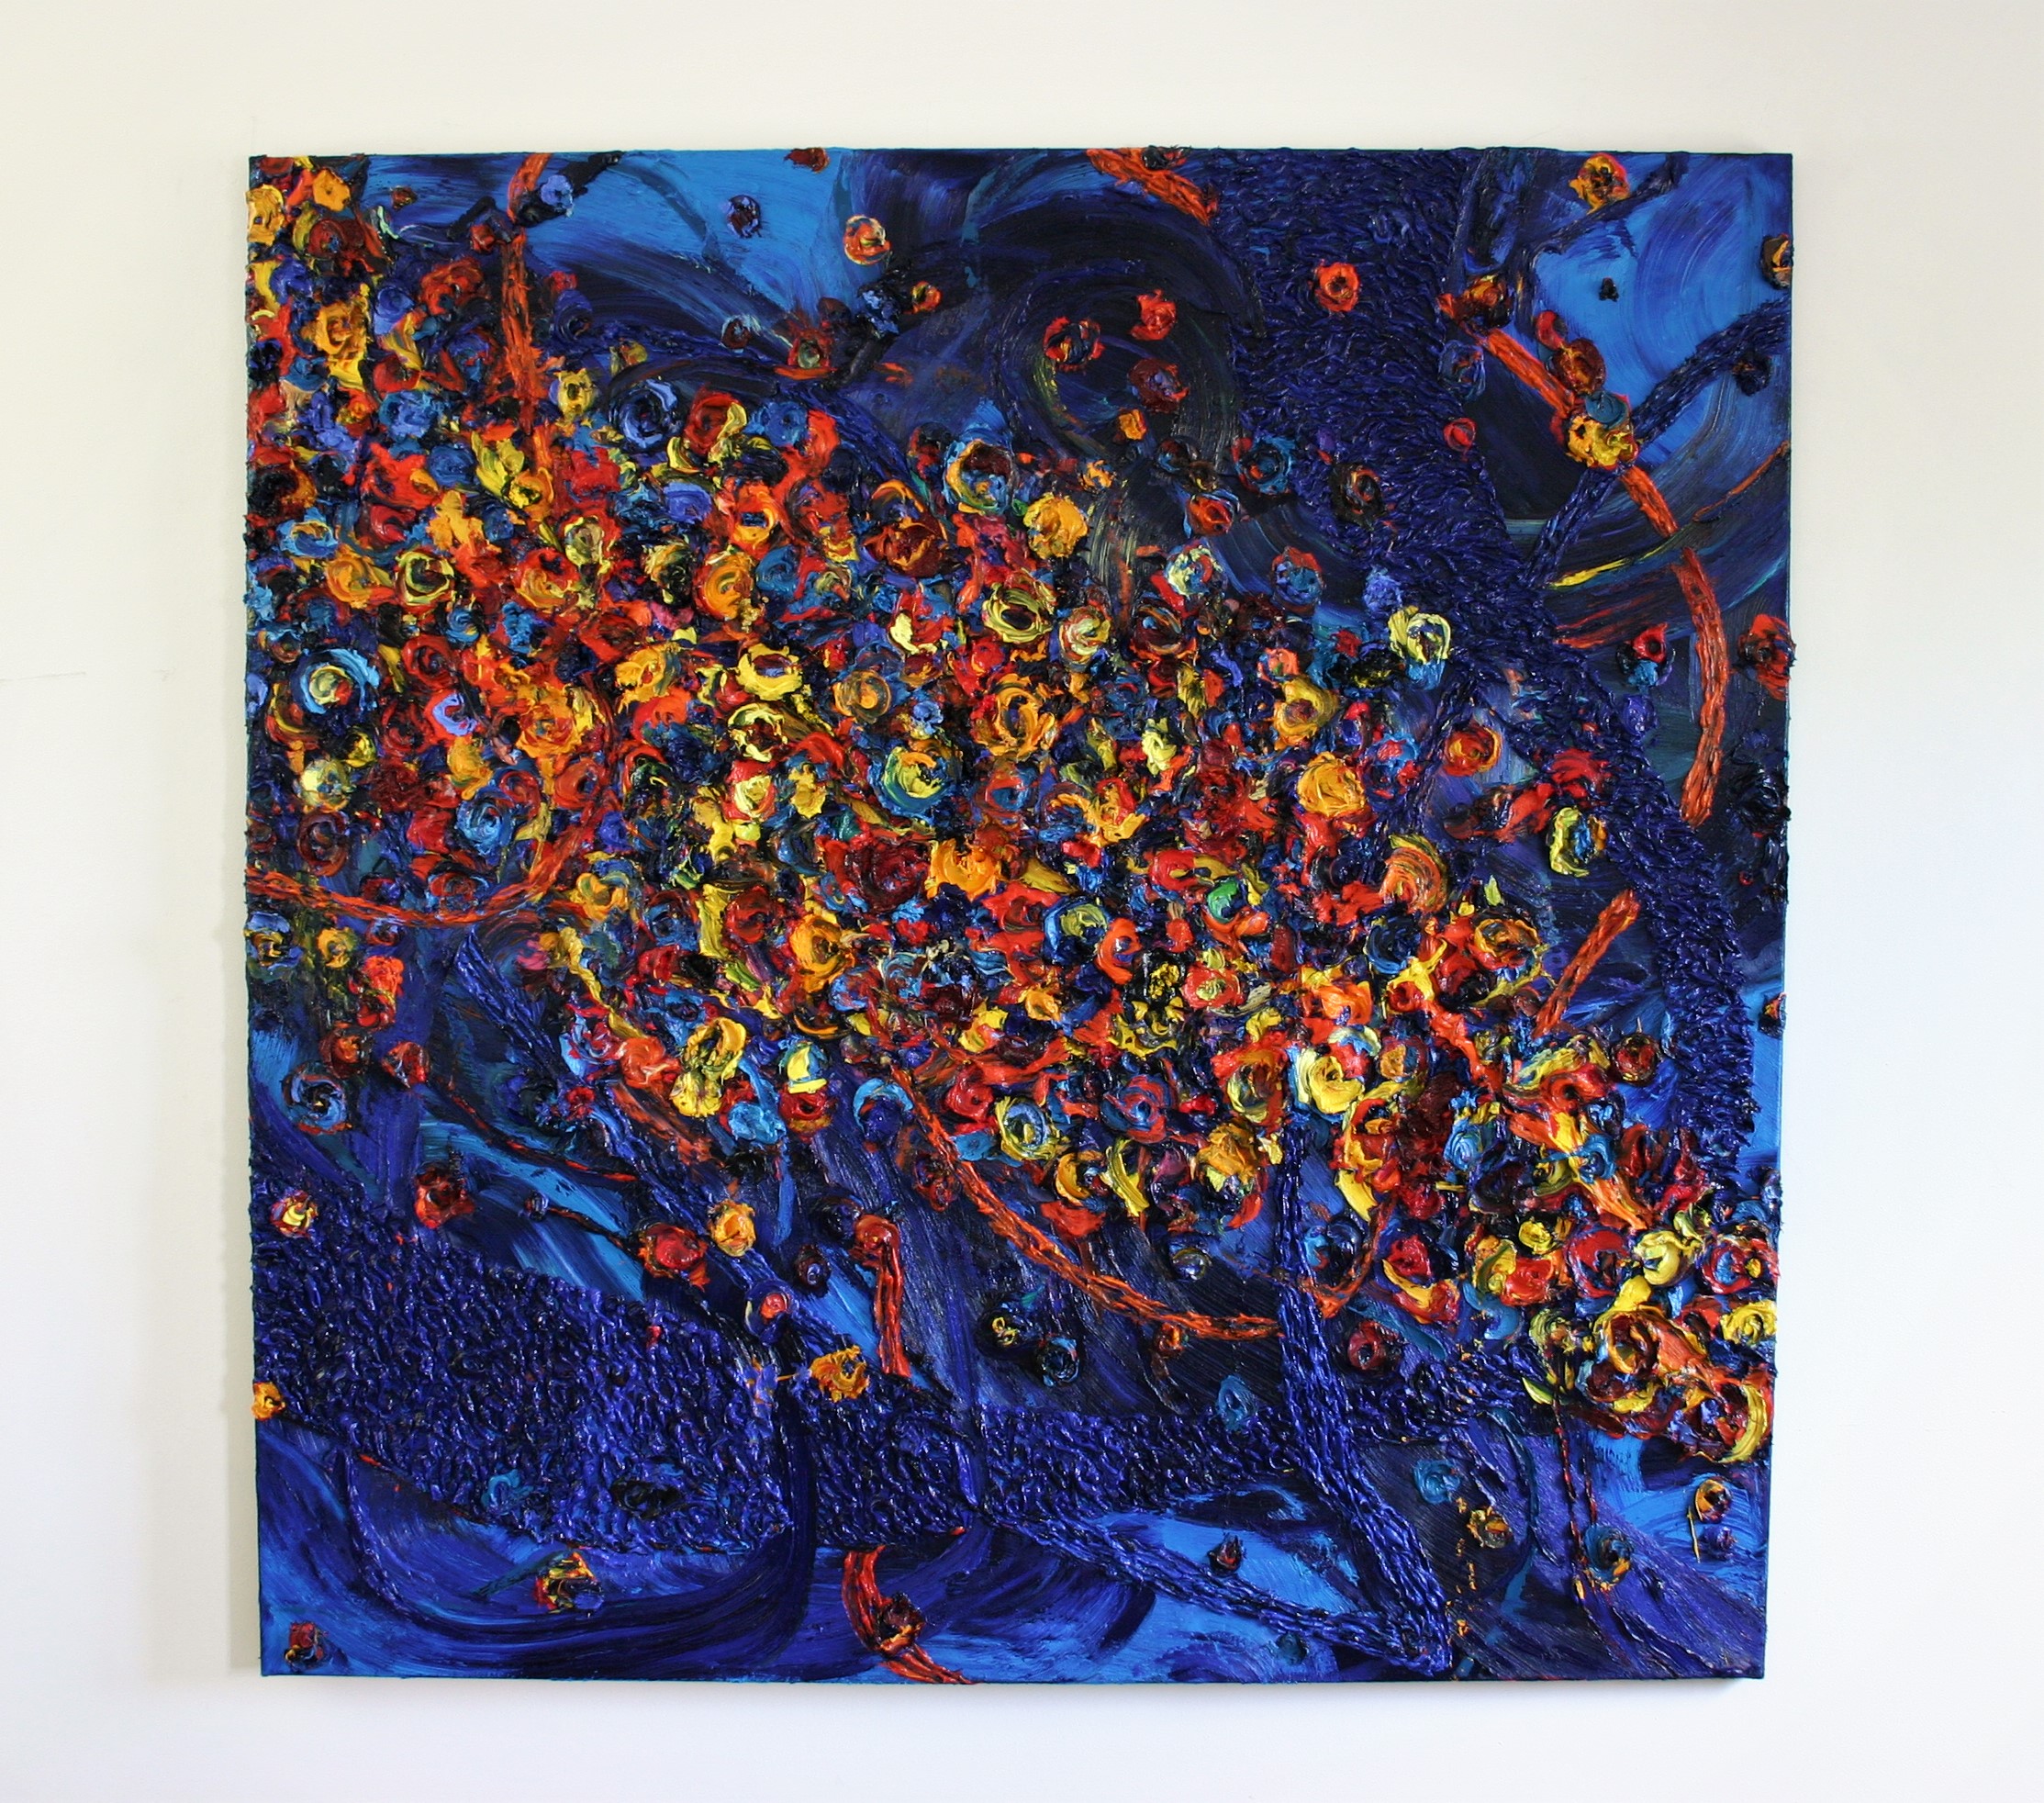  Harry Meyer, Sternenlichter: 2021, Öl auf Leinwand, 170 x 170 cm 